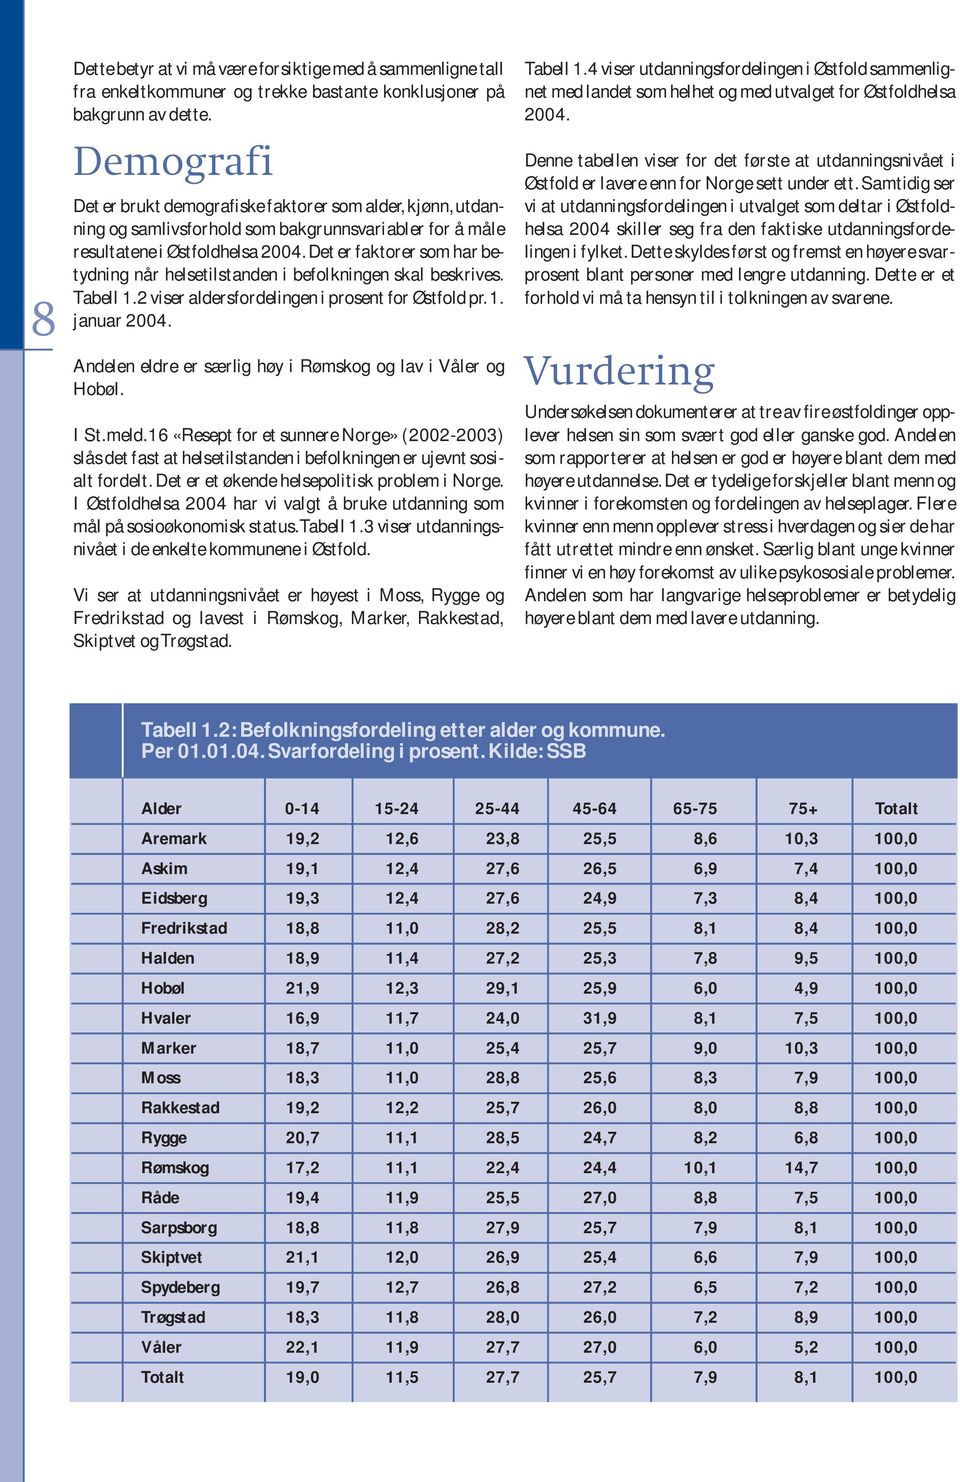 Det er faktorer som har betydning når helsetilstanden i befolkningen skal beskrives. Tabell 1.2 viser aldersfordelingen i prosent for Østfold pr.1. januar 2004.